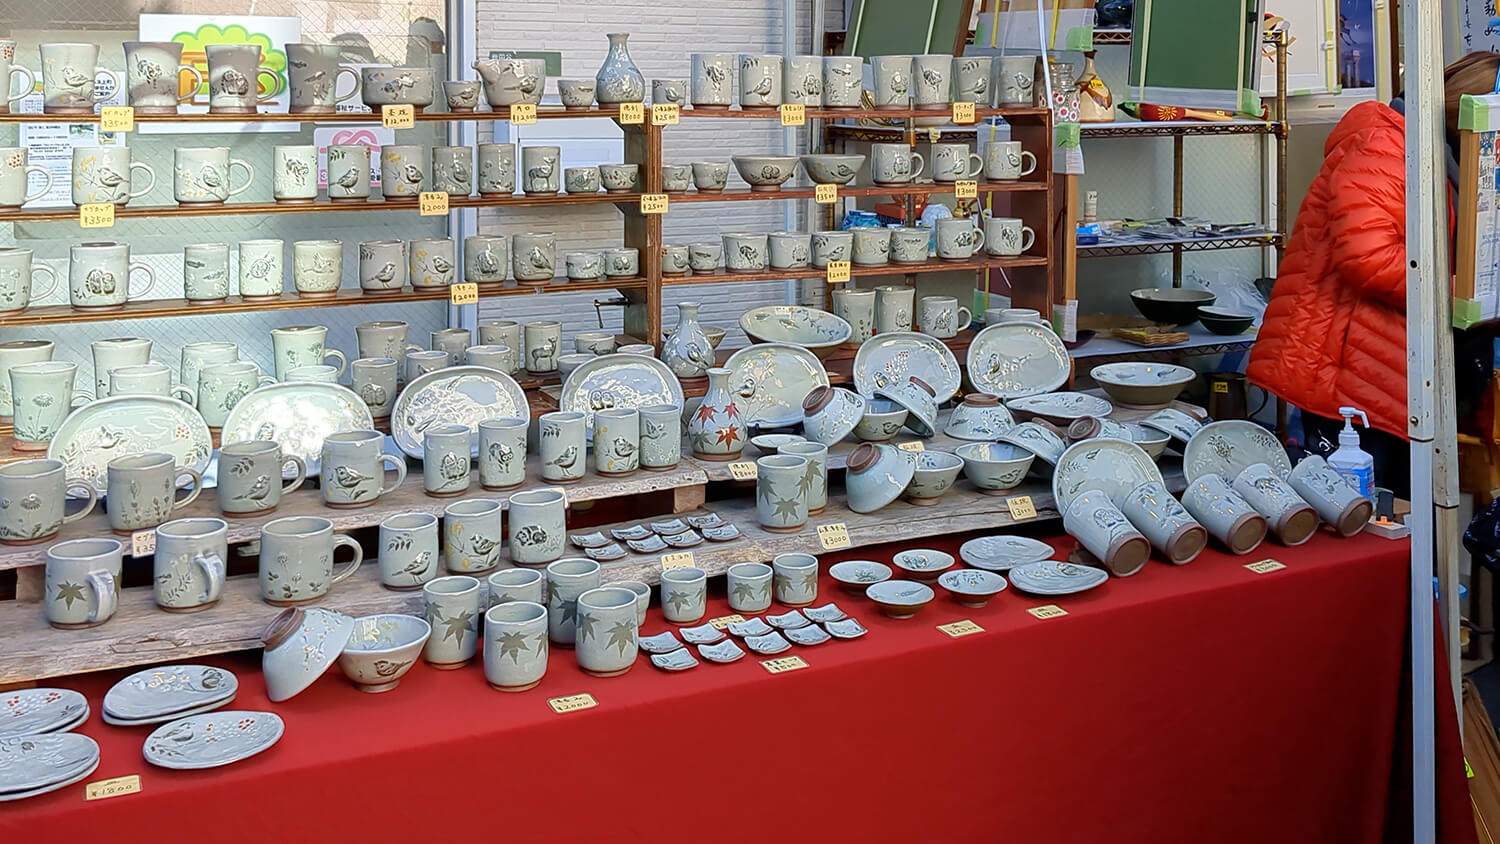 この画像は2022年ボロ市のシックな陶器を販売している露店を撮影した写真です